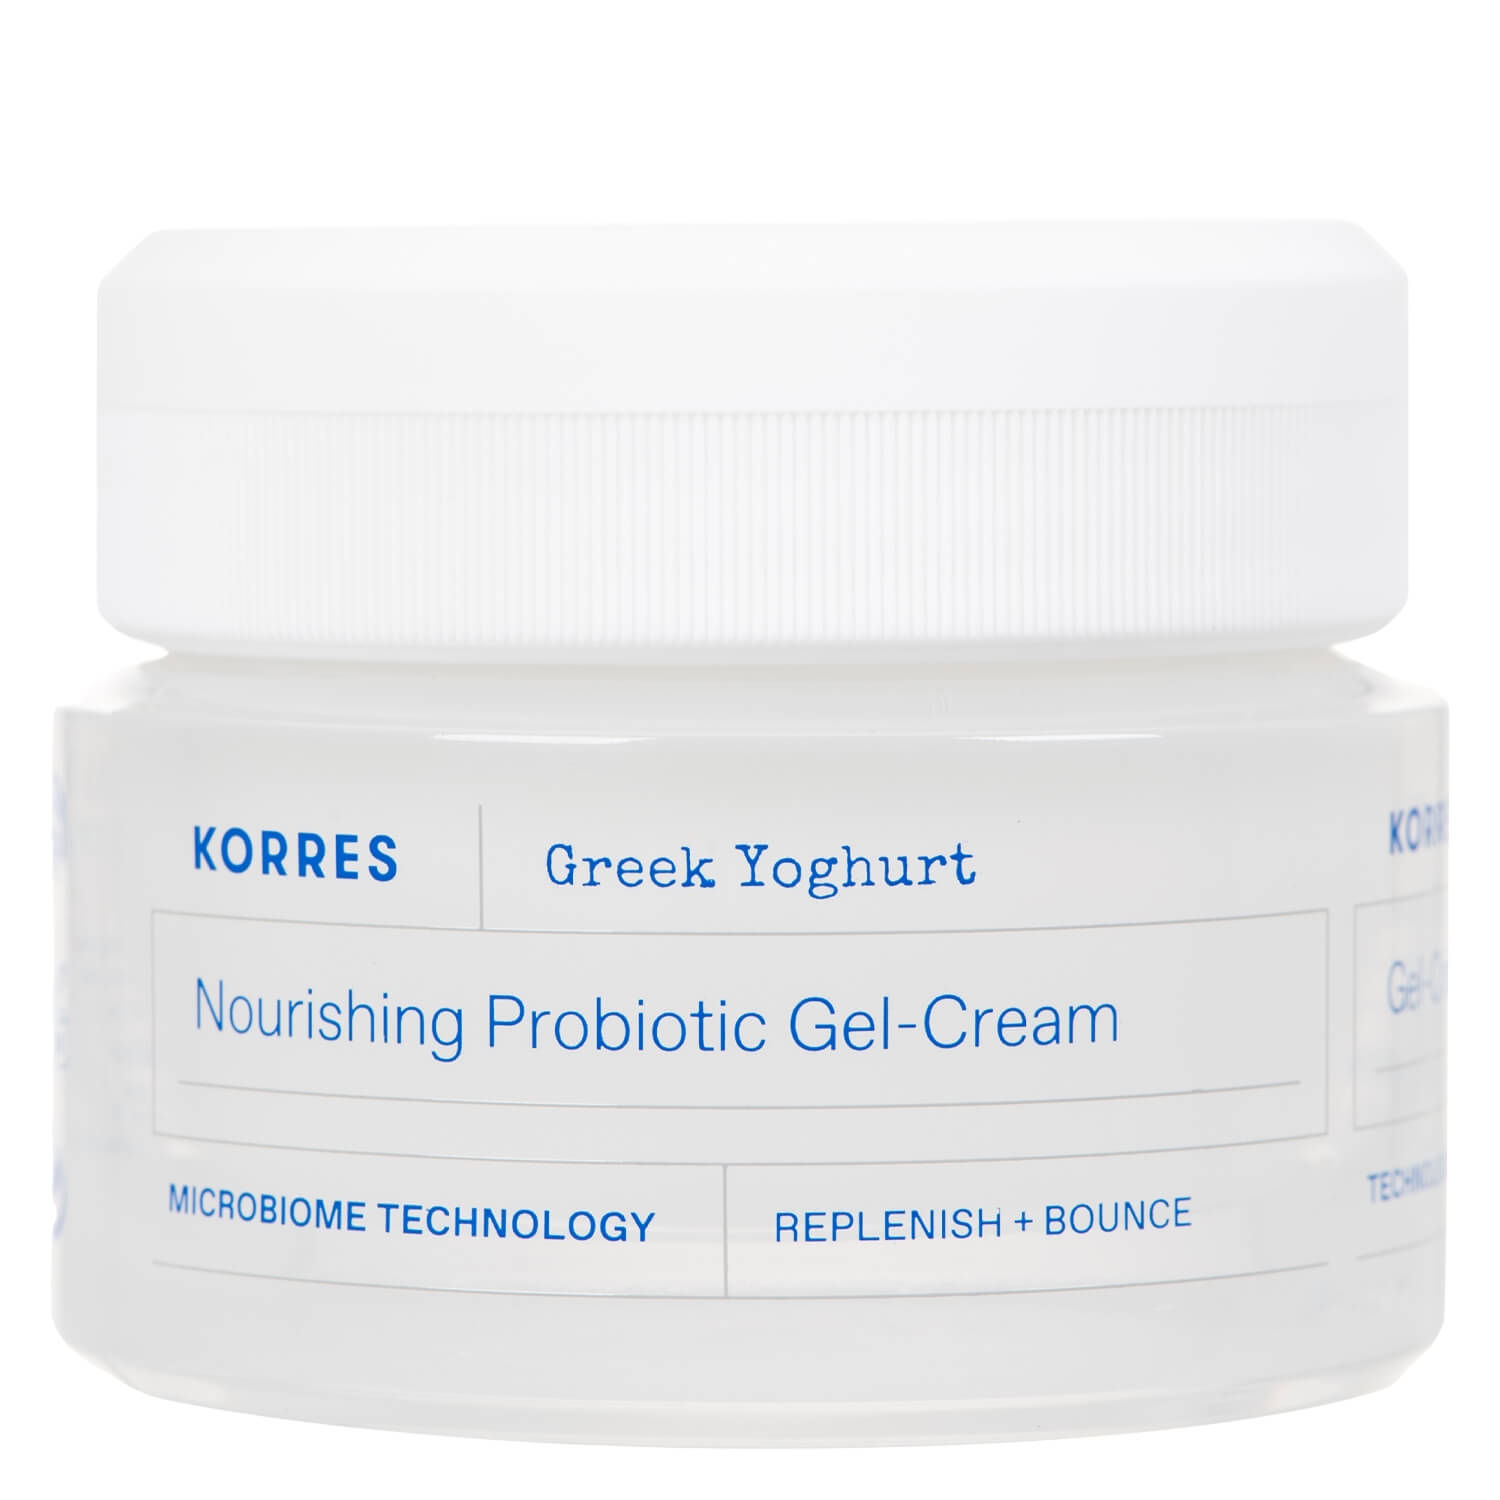 Produktbild von Greek Yoghurt Nourishing Probiotic Gel-Cream